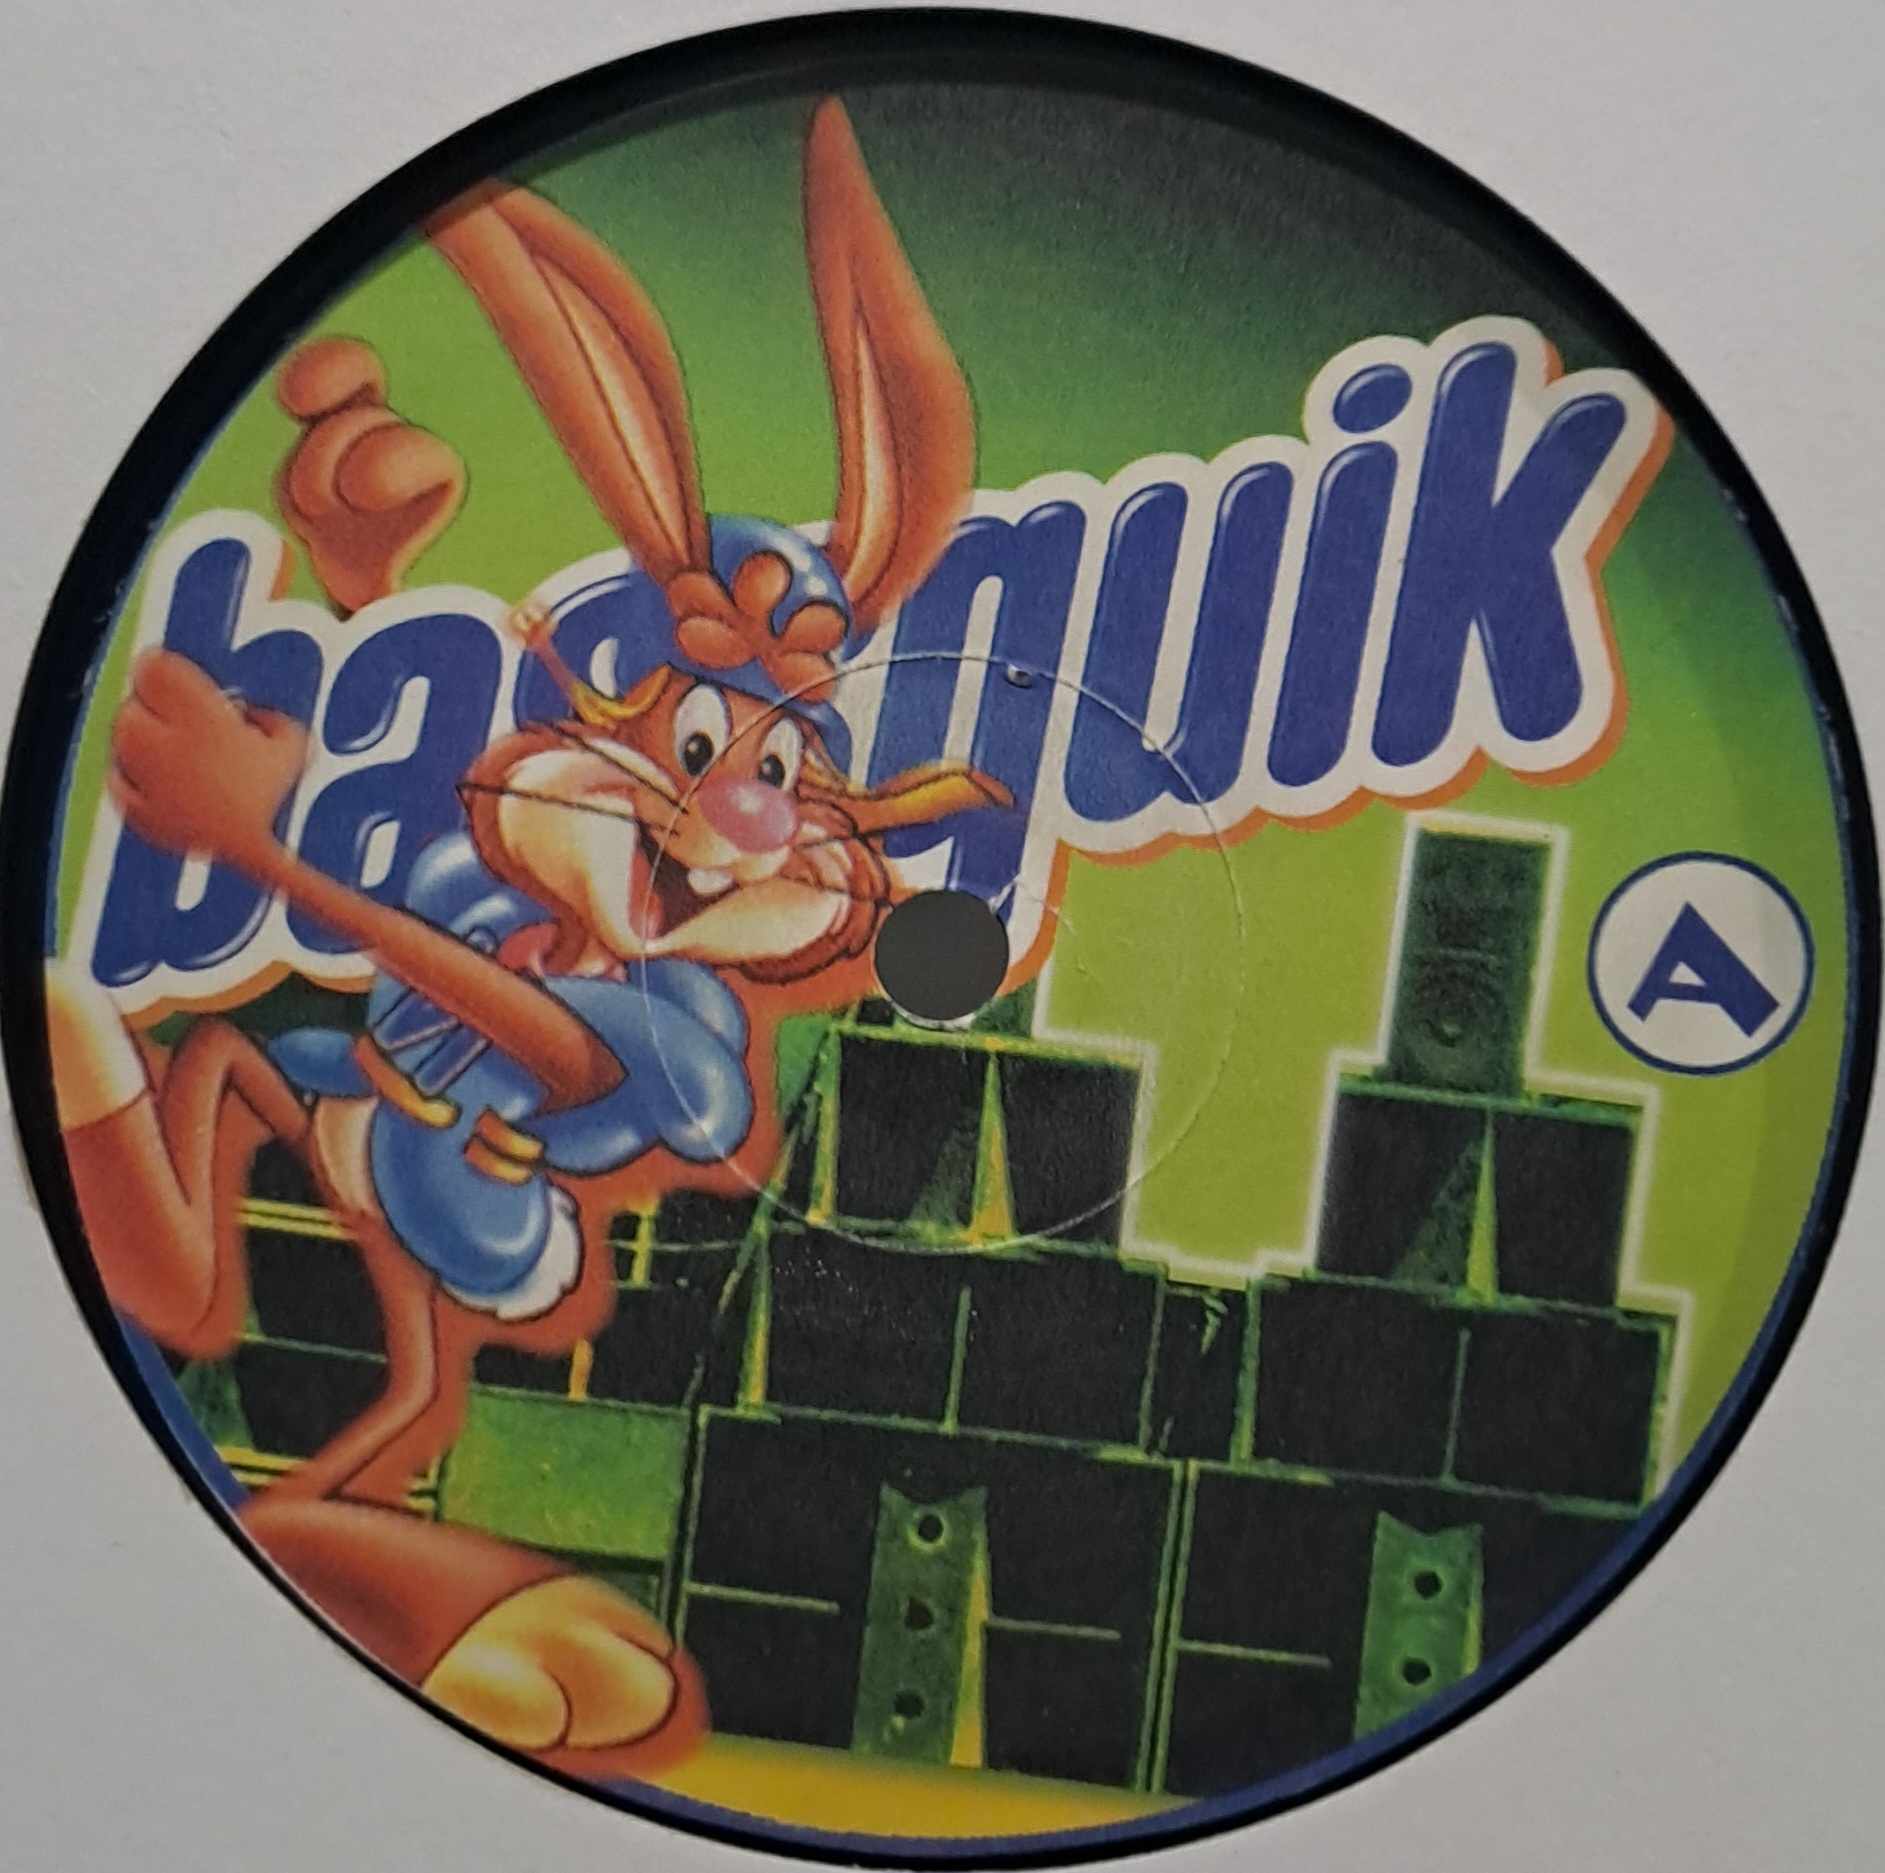 Bassquik 02 (original) - vinyle freetekno